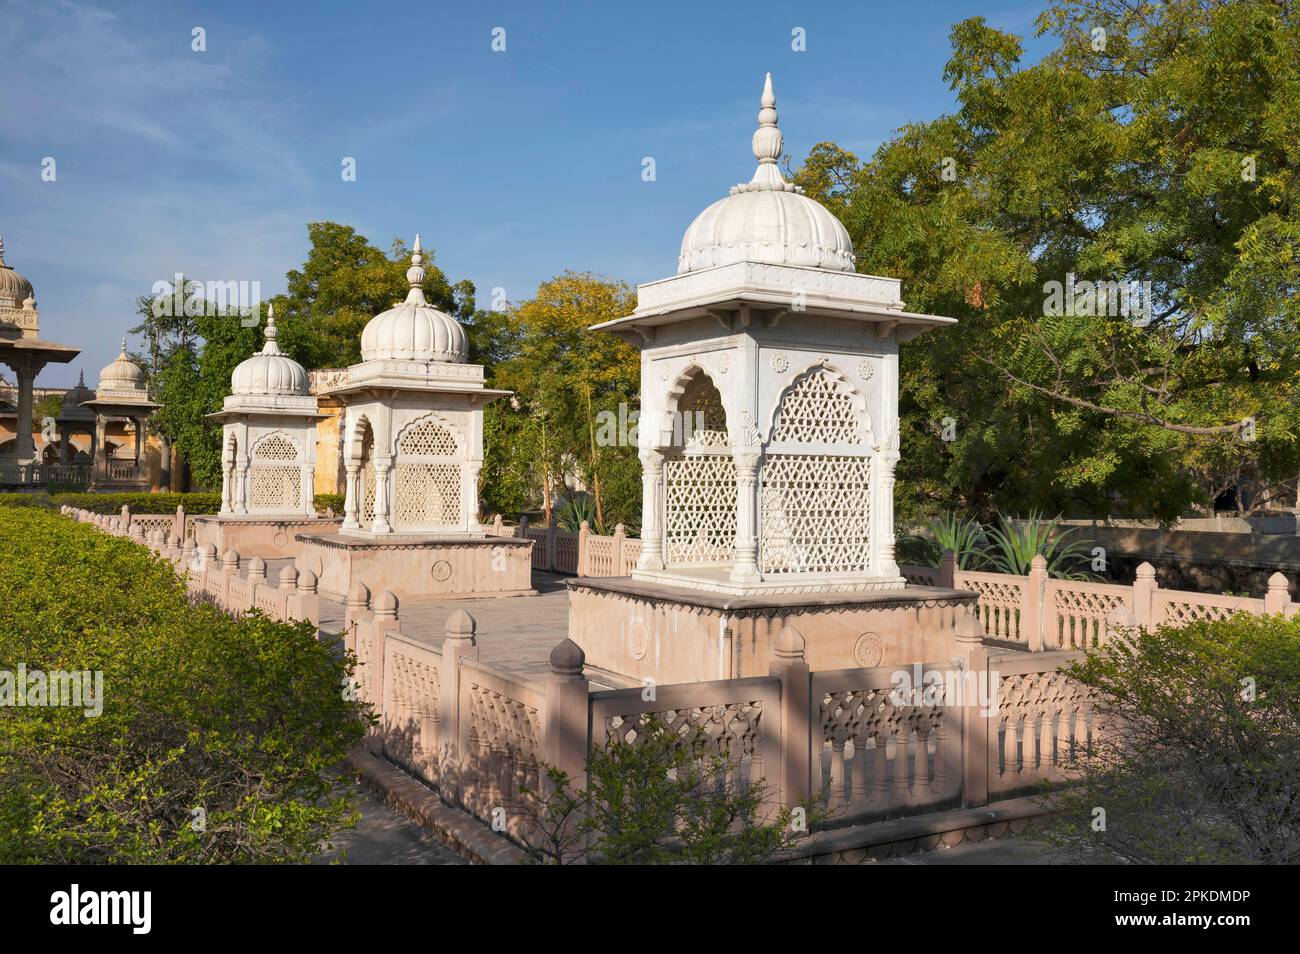 Cenotaphes de trois maharanis de Maharaja Sawai Man Singh deuxième de Jaipur, situé dans le complexe de Maharaniyon Ki Chhatriyan, ce site présente tr Banque D'Images